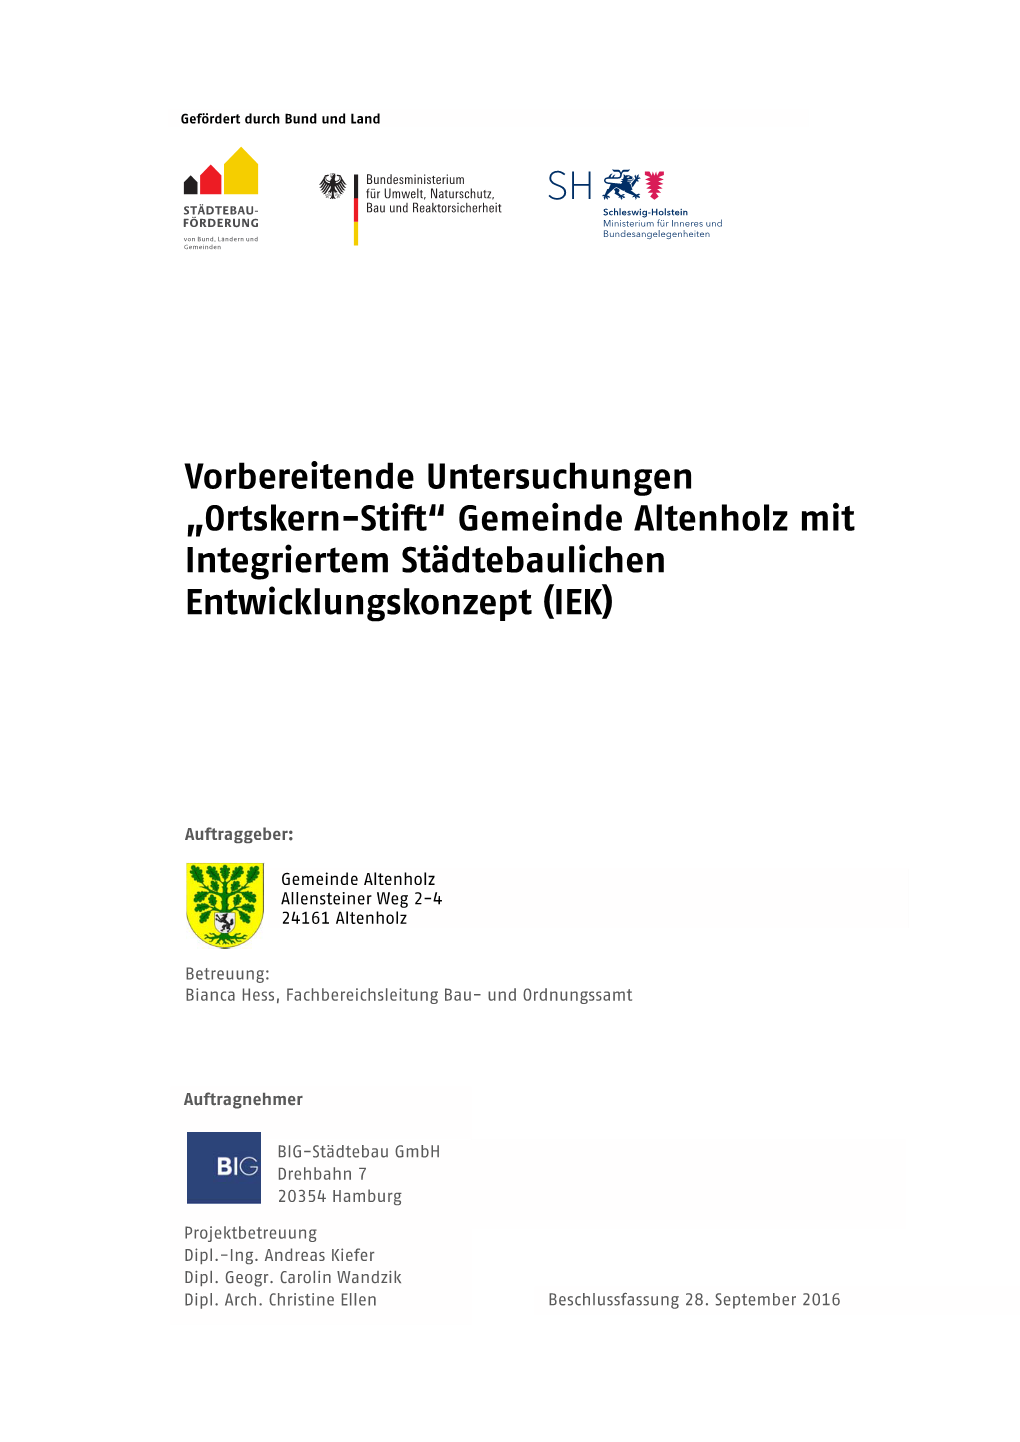 Vorbereitende Untersuchungen „Ortskern-Stift“ Gemeinde Altenholz Mit Integriertem Städtebaulichen Entwicklungskonzept (IEK)